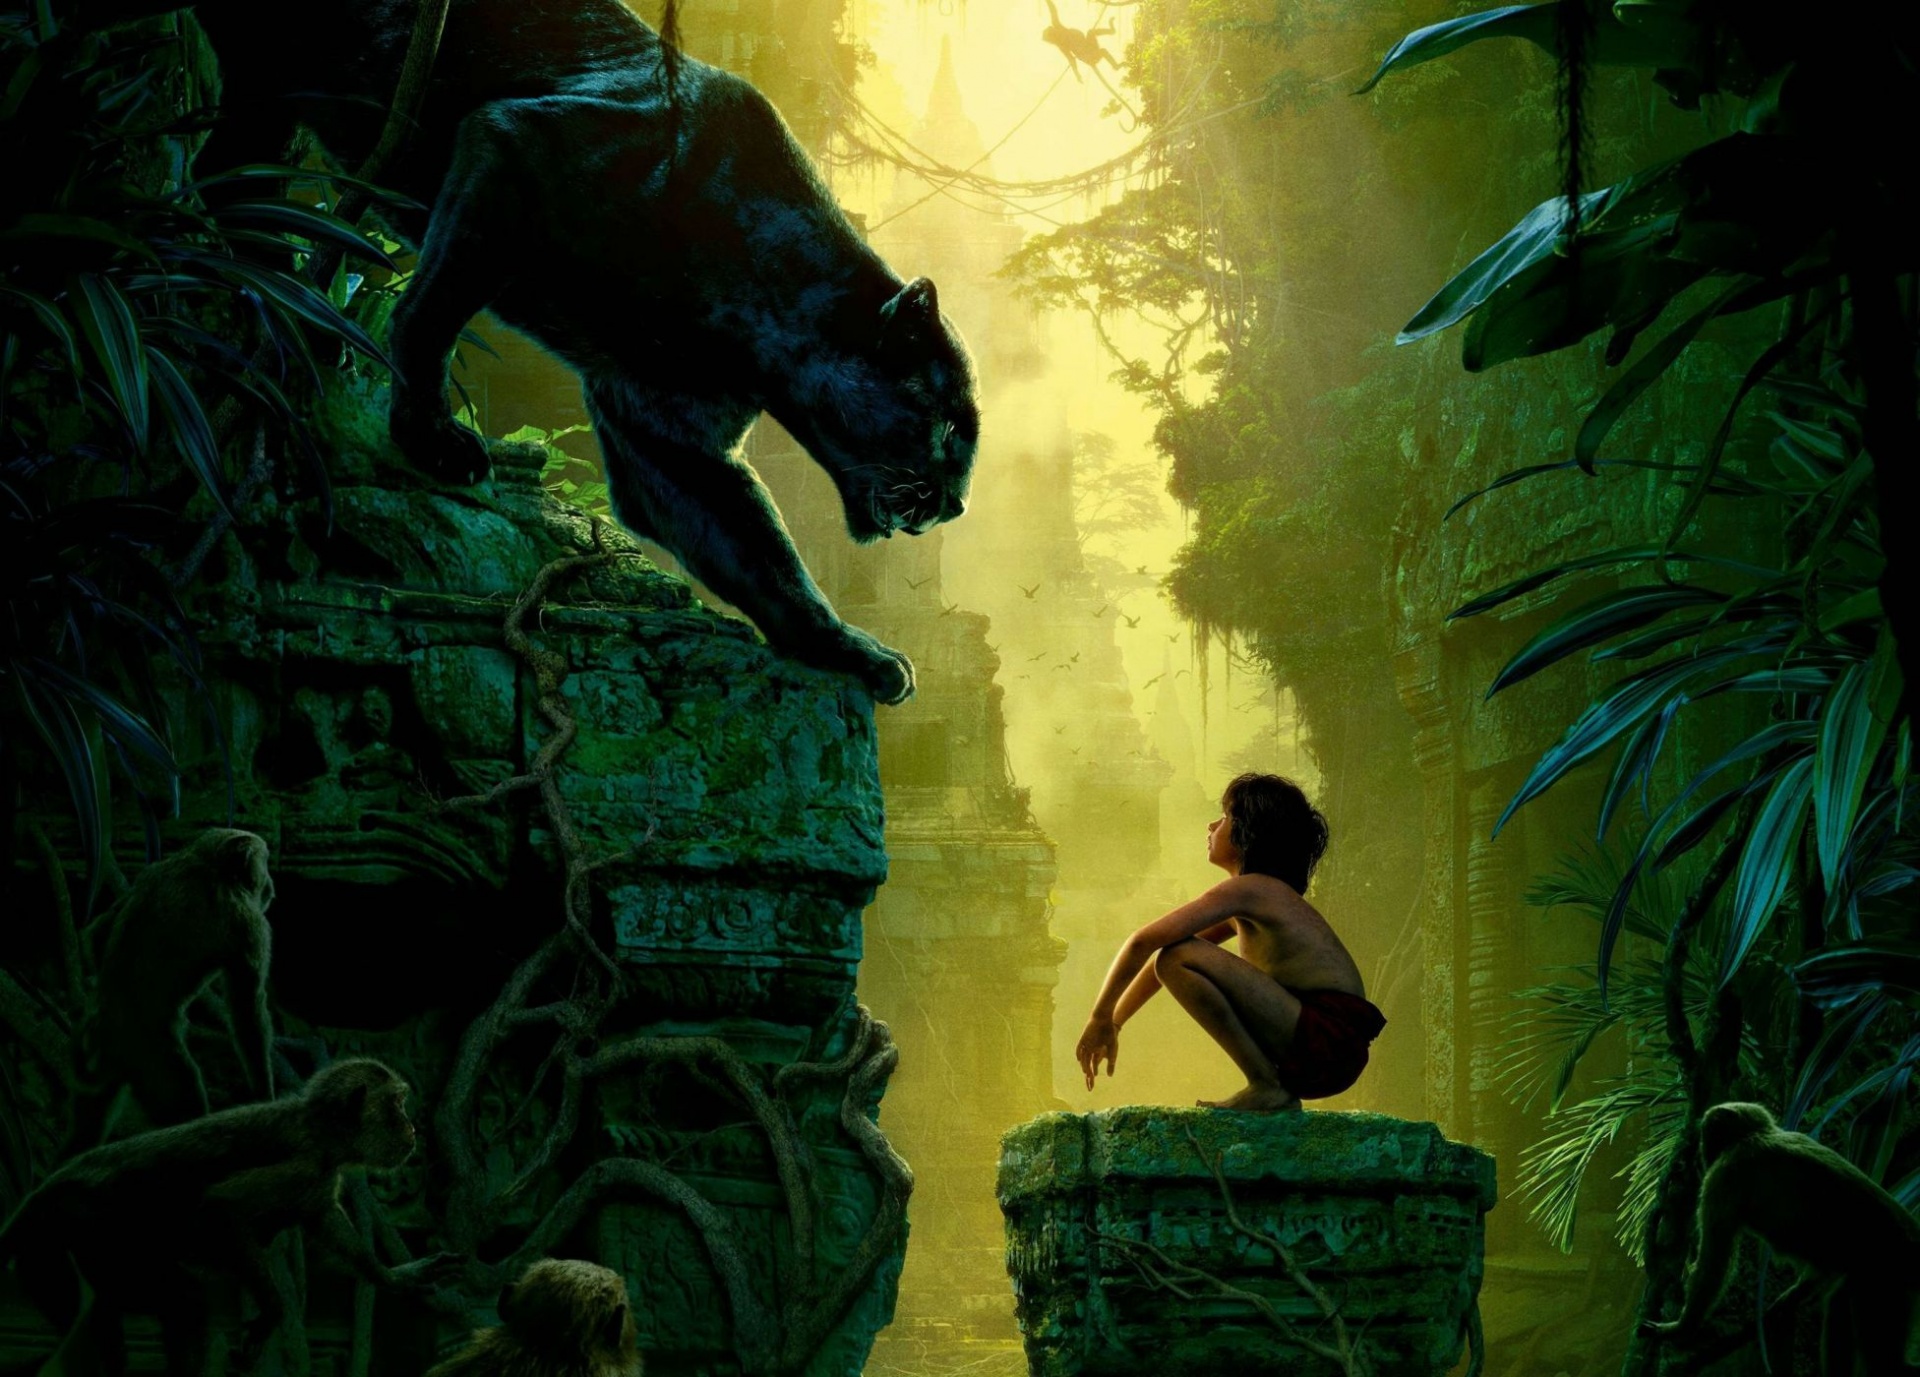 download wallpaper: Jungle Book wallpaper